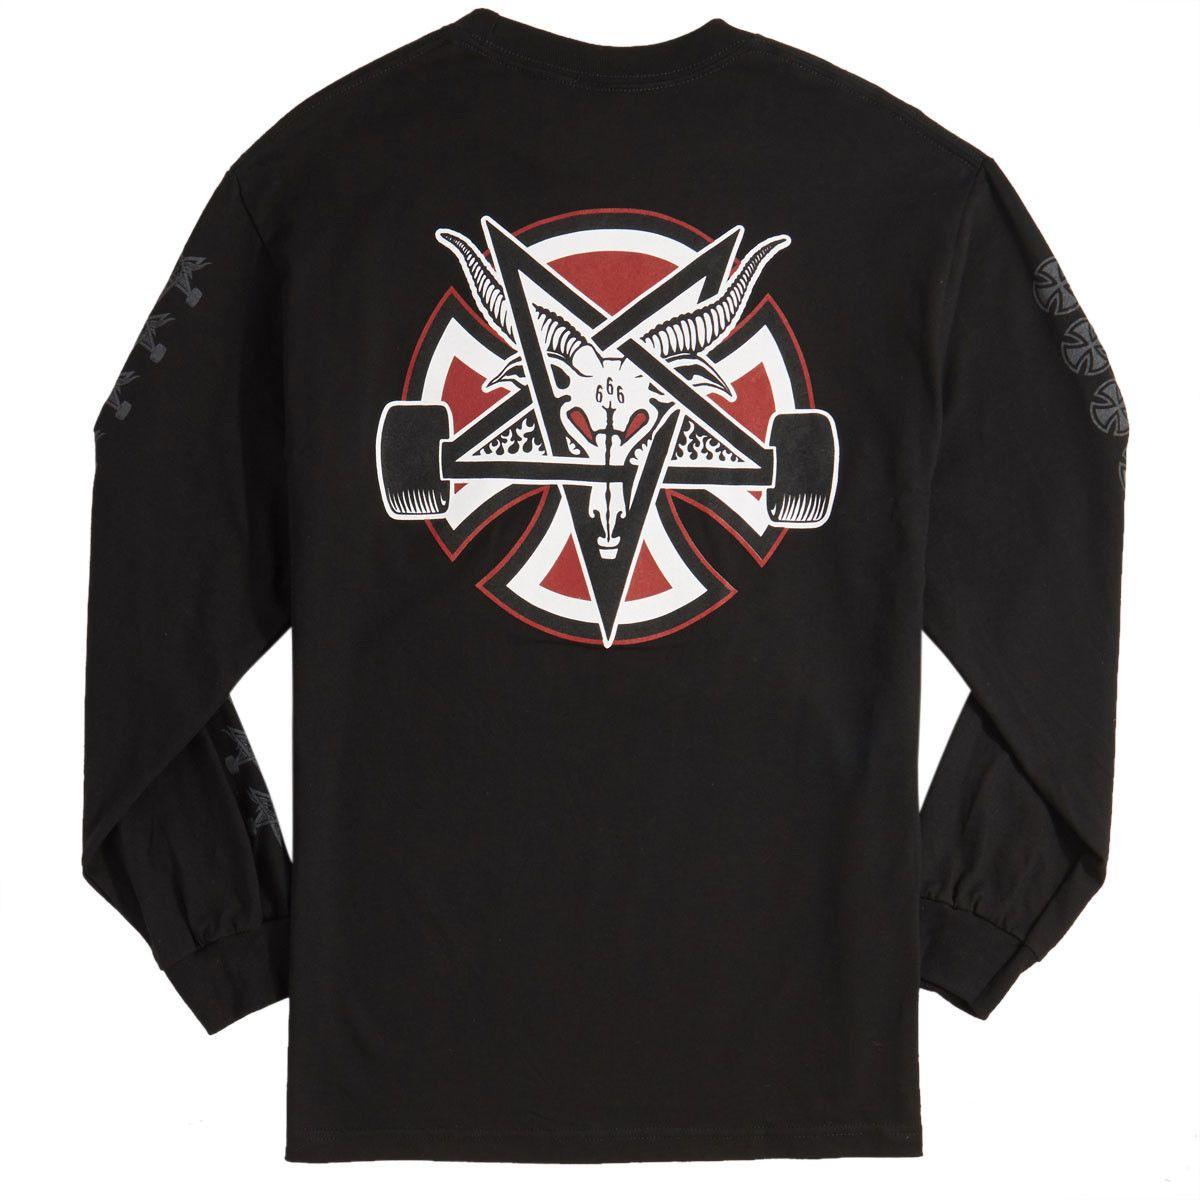 Thrasher Pentagram Logo - Independent x Thrasher Pentagram Cross Long Sleeve T-Shirt - Black